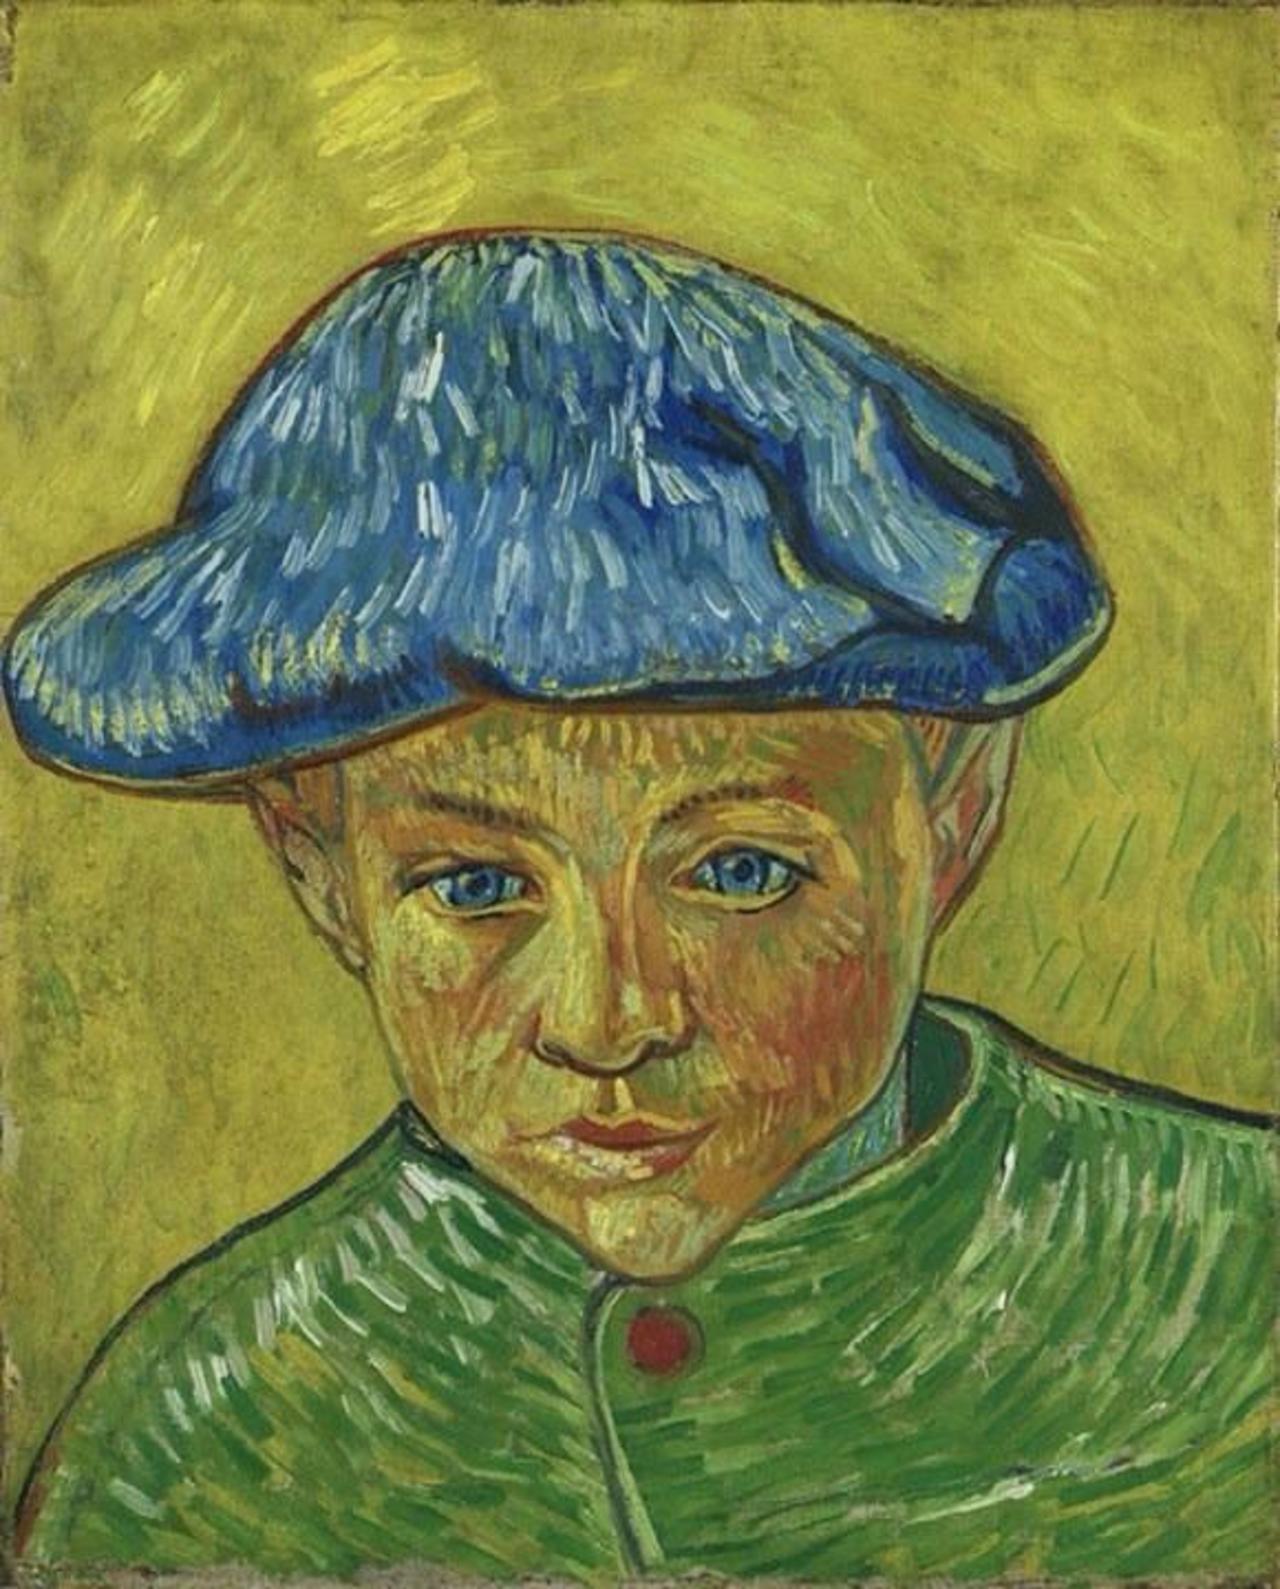 #Art by Vincent Van Gogh "Portrait of Camille Roulin" 1888. http://t.co/SZMS47LoI5